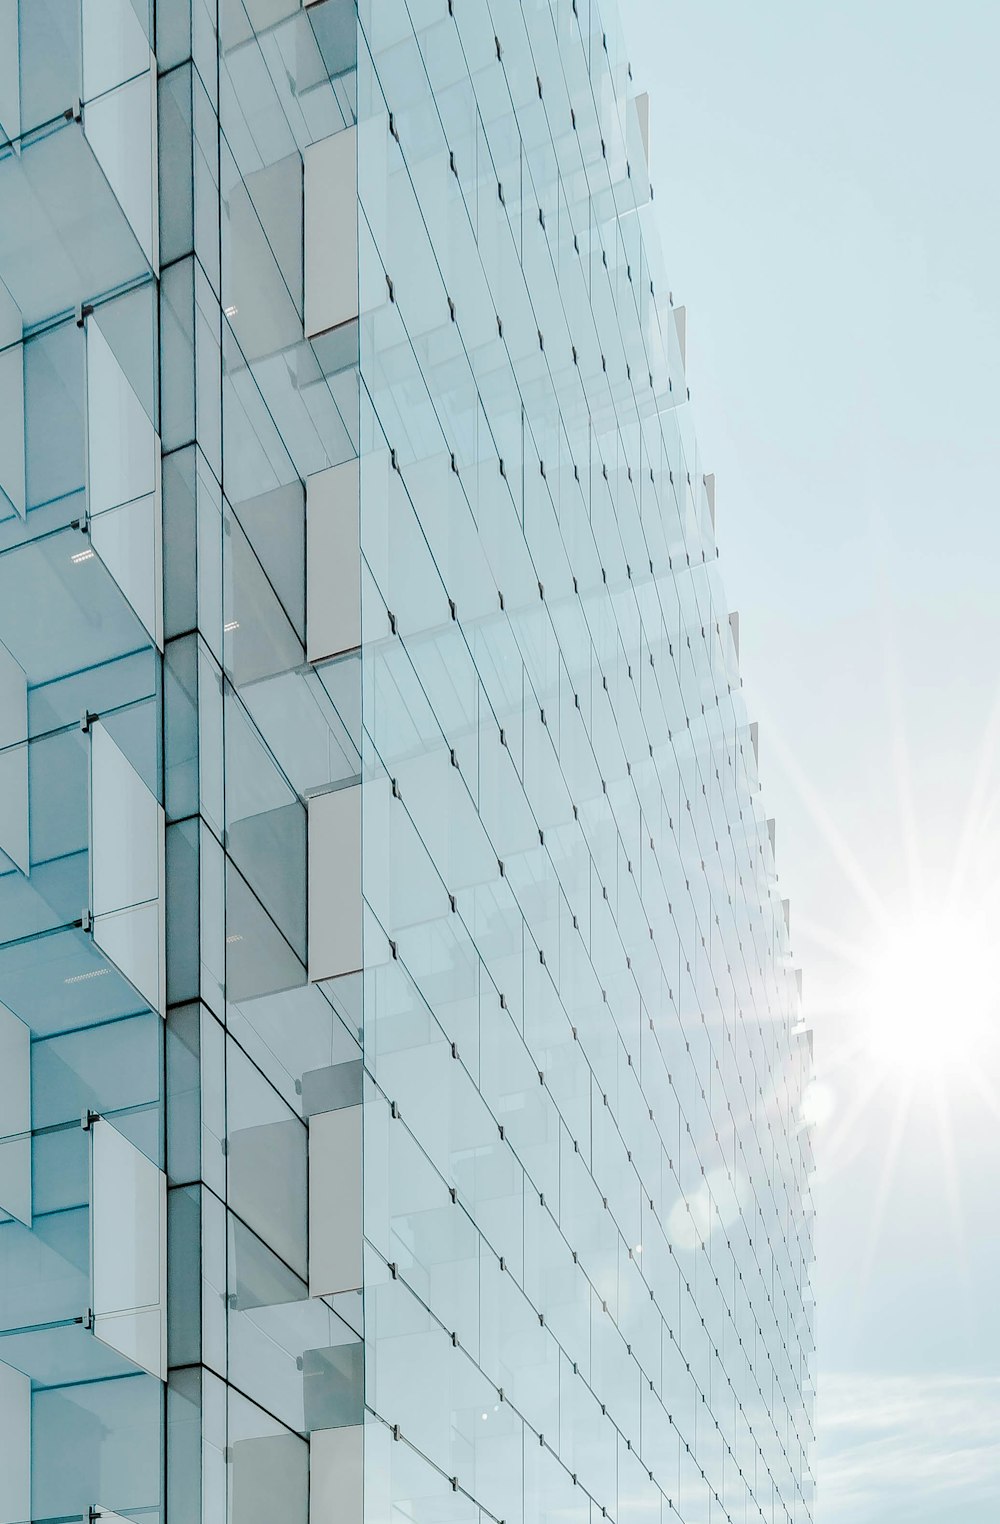 Edificio de gran altura con panel de vidrio bajo cielo azul con salida del sol